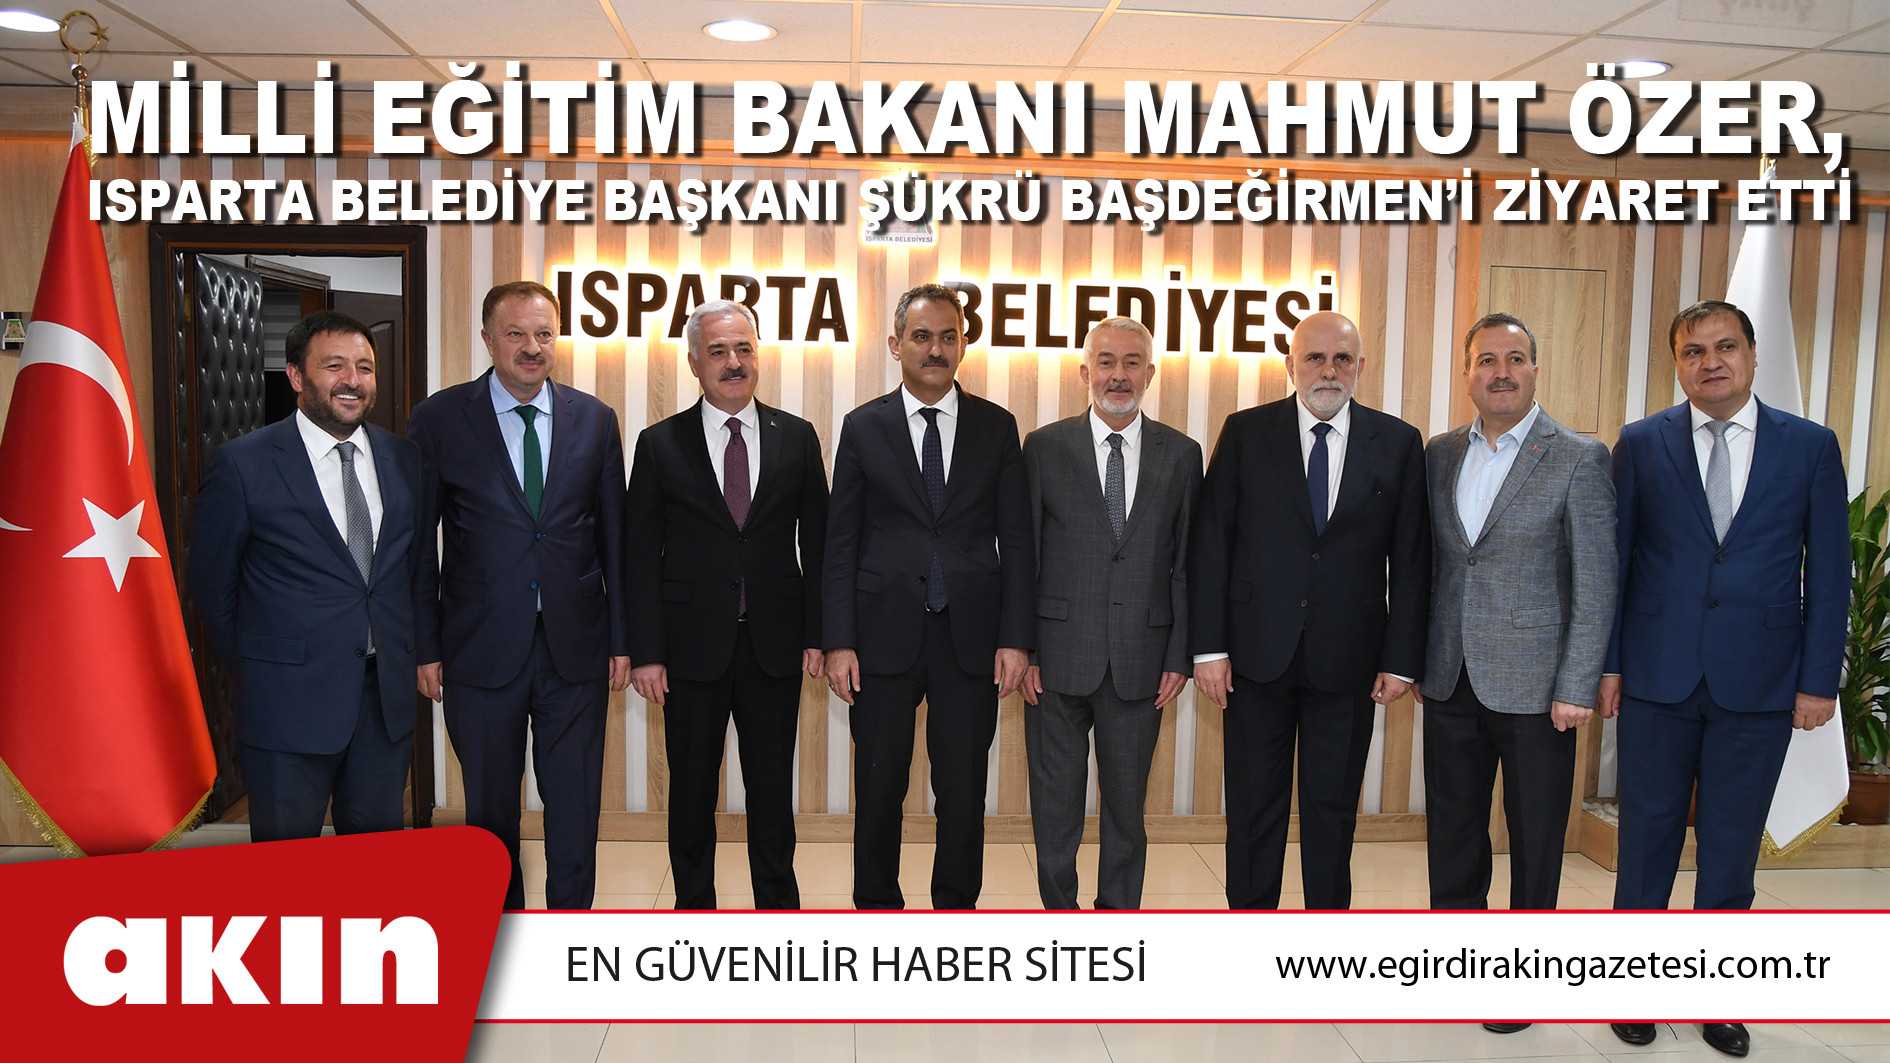 Milli Eğitim Bakanı Mahmut Özer, Isparta Belediye Başkanı Şükrü Başdeğirmen’i Ziyaret Etti